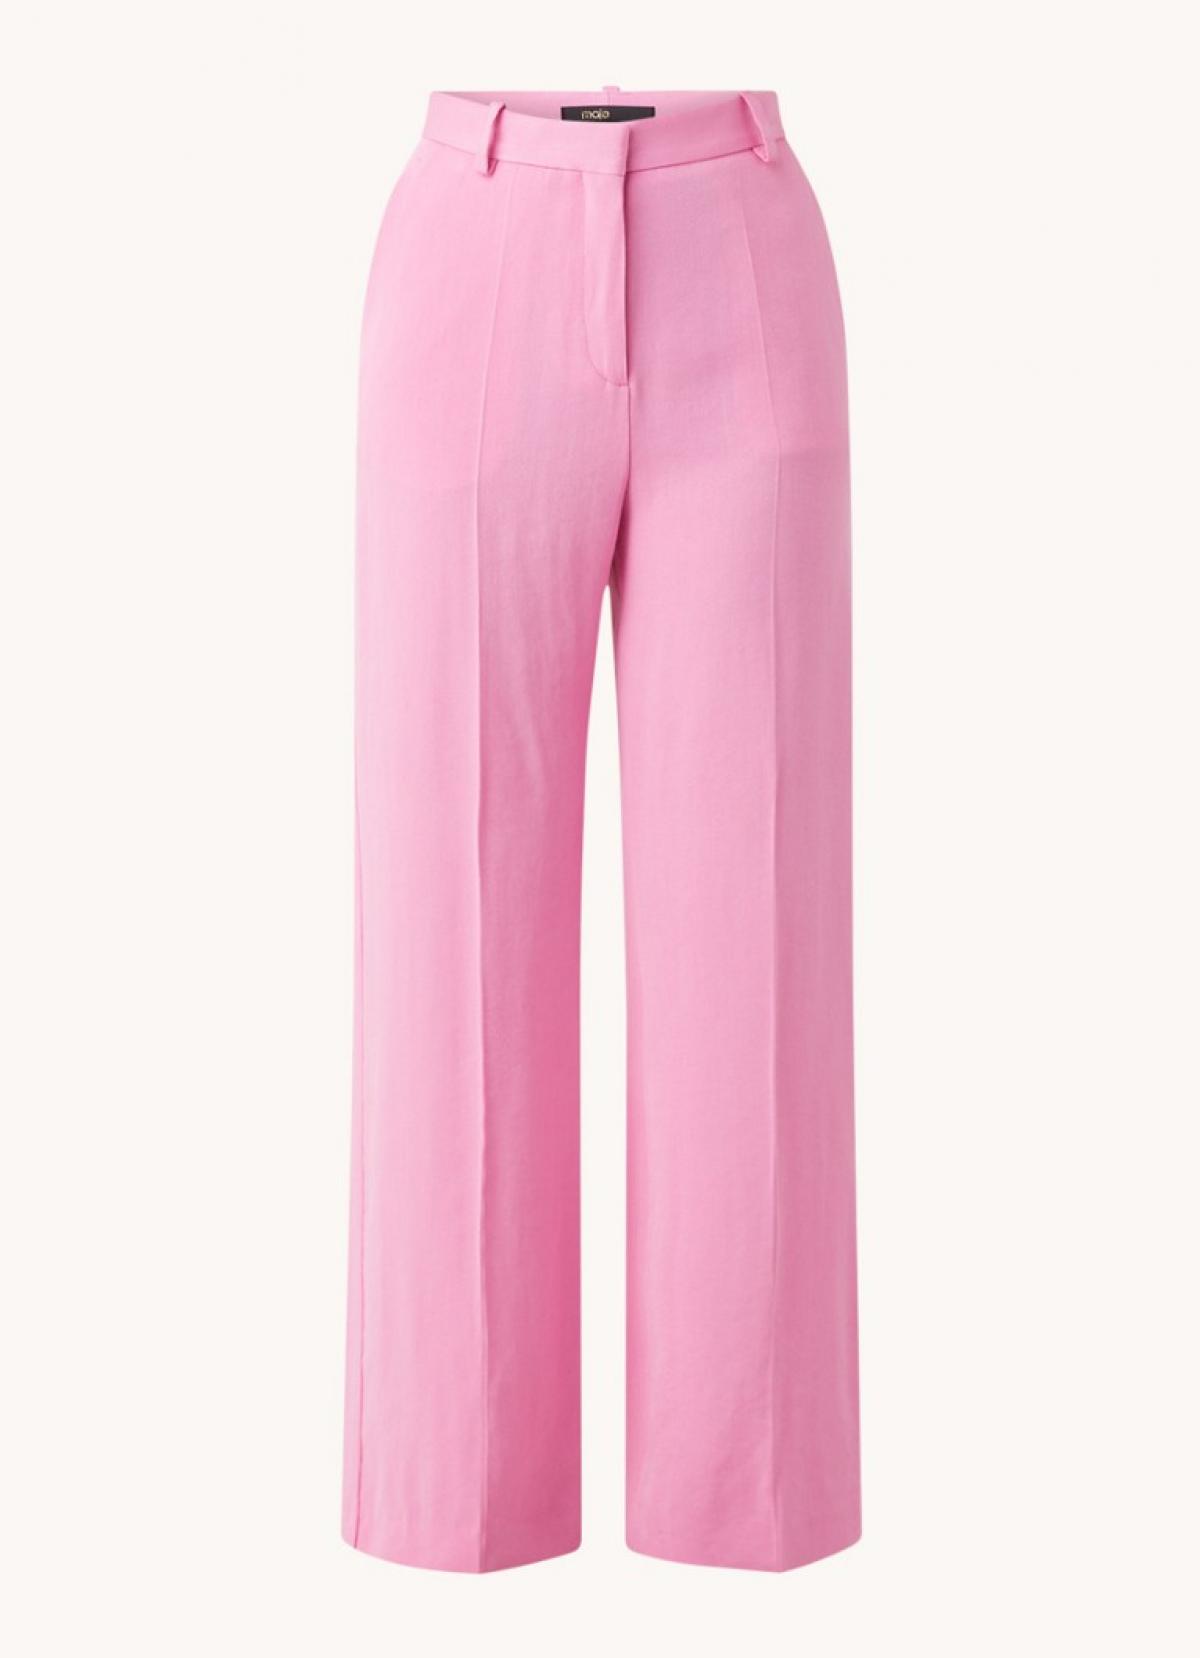 Pantalon rose pâle